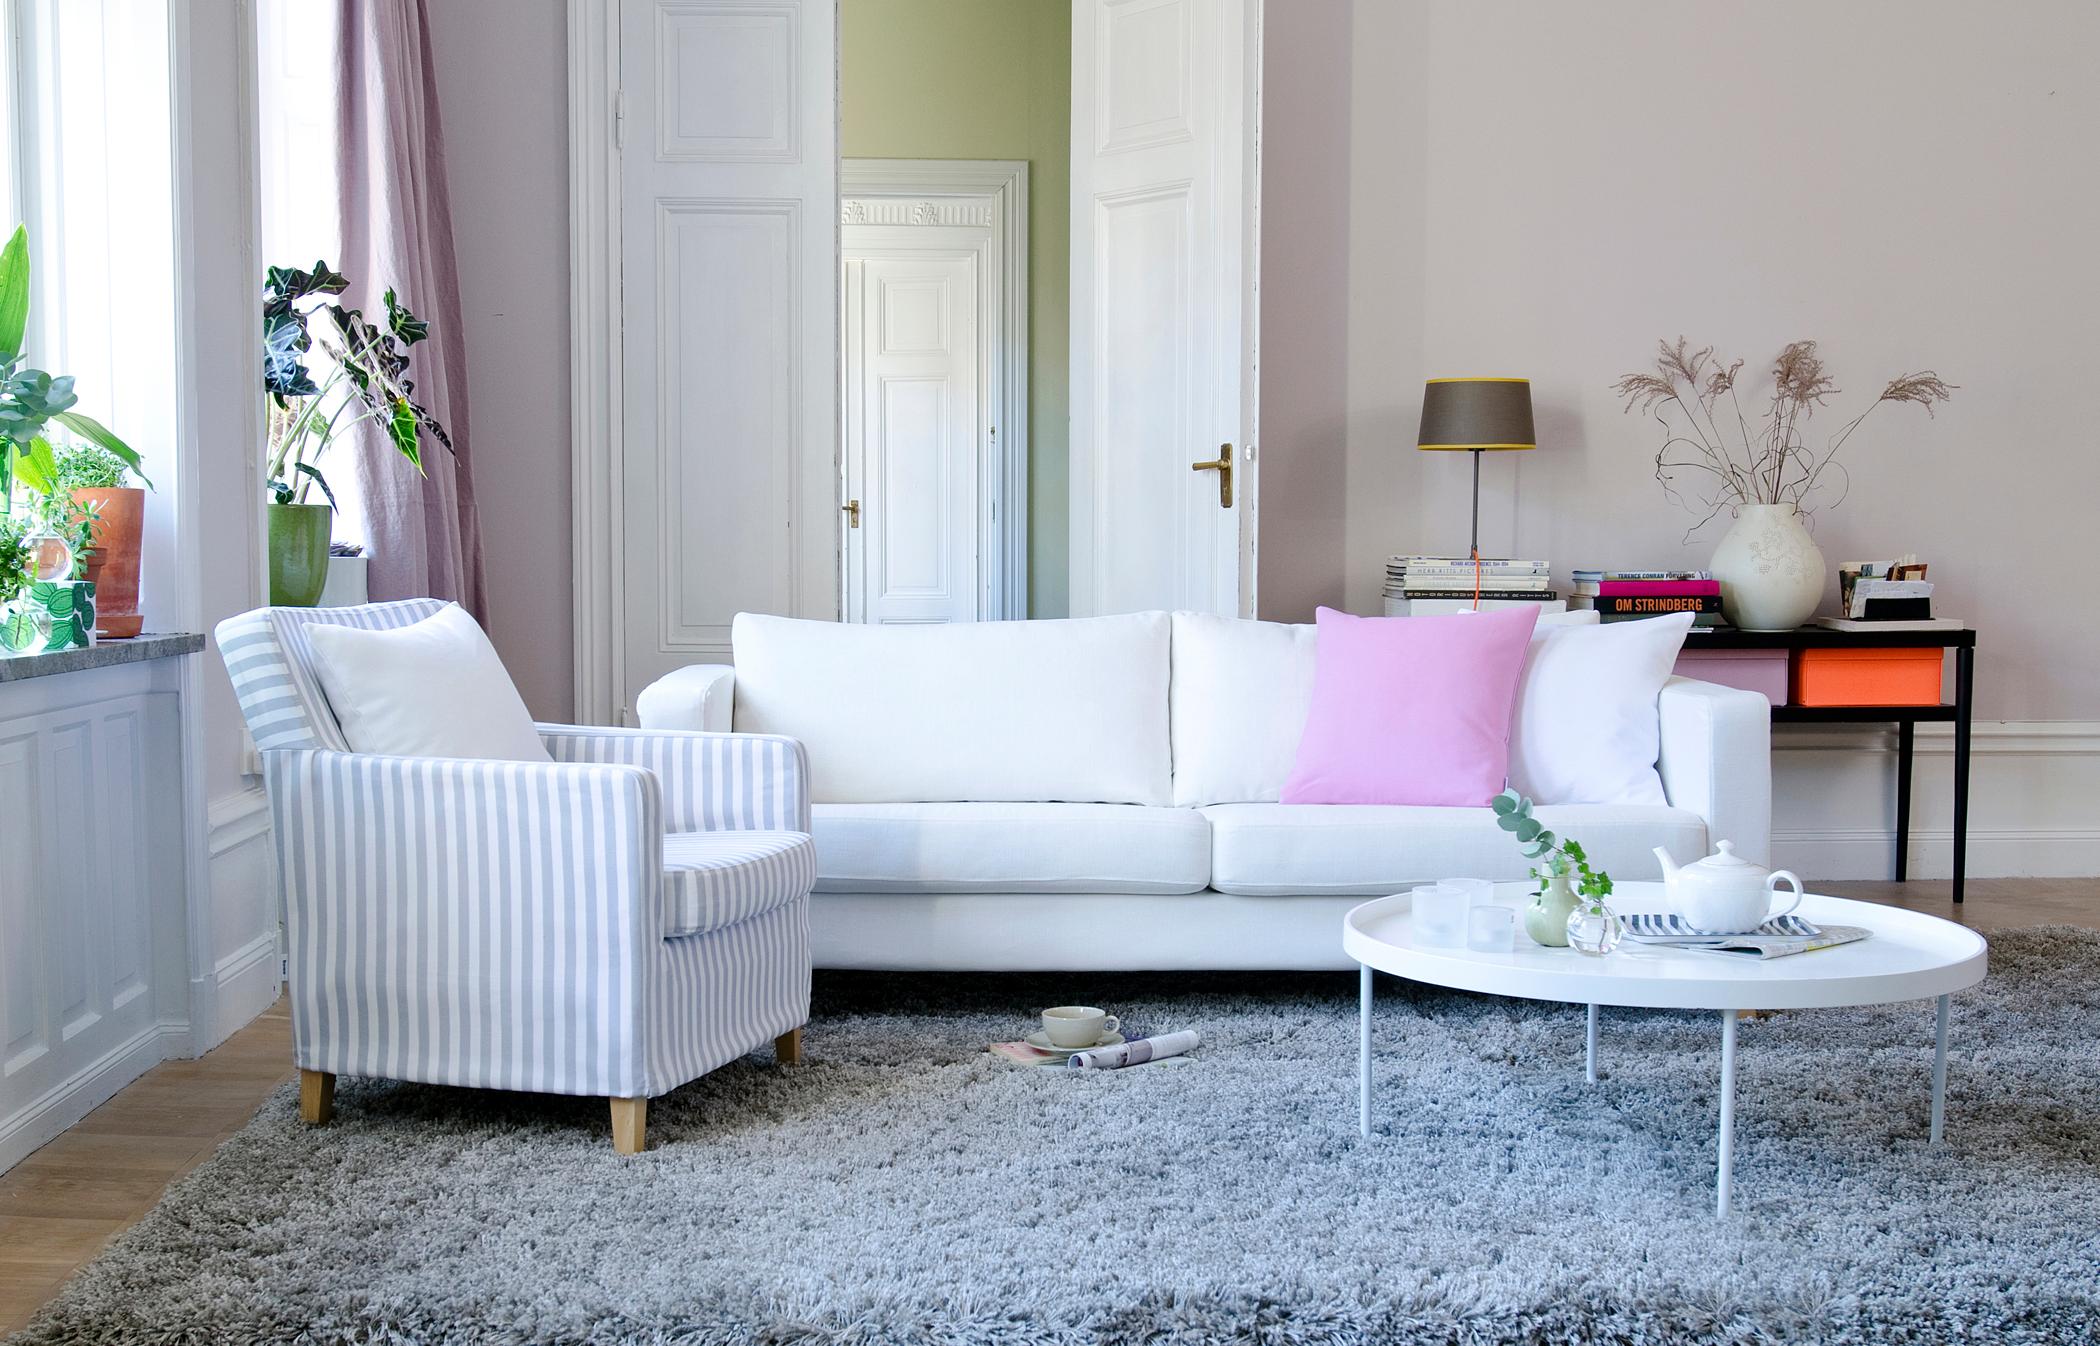 Wohnzimmer feminin einrichten #couchtisch #teppich #sessel #flügeltür #sofa #weißercouchtisch #pflanzendeko #gestreiftersessel ©Bemz